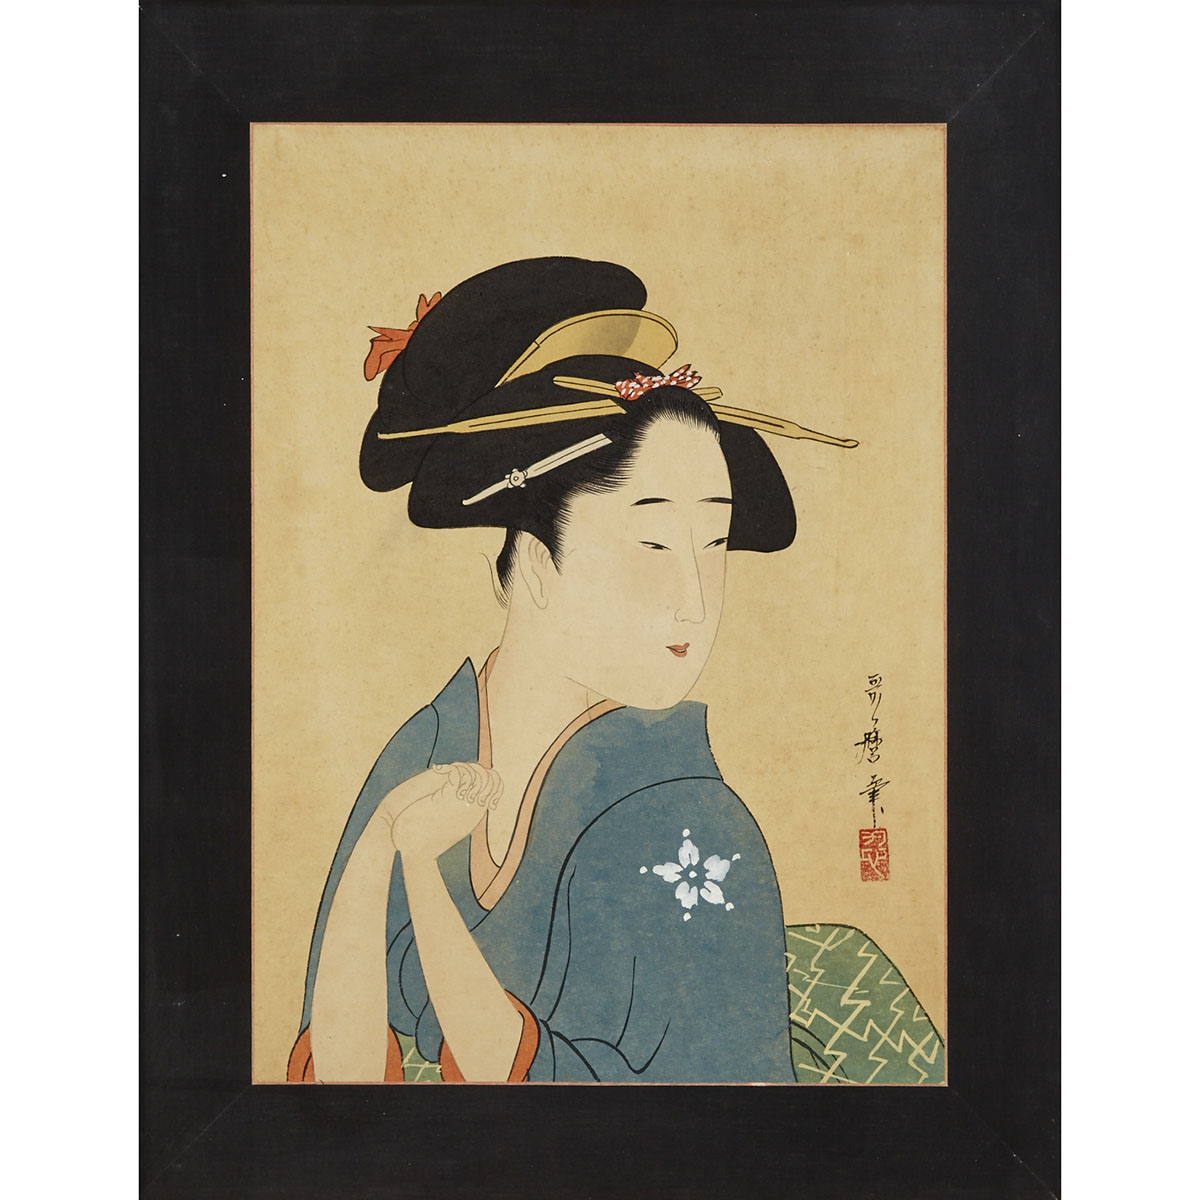 After Kitagawa Utamaro (1753-1806)